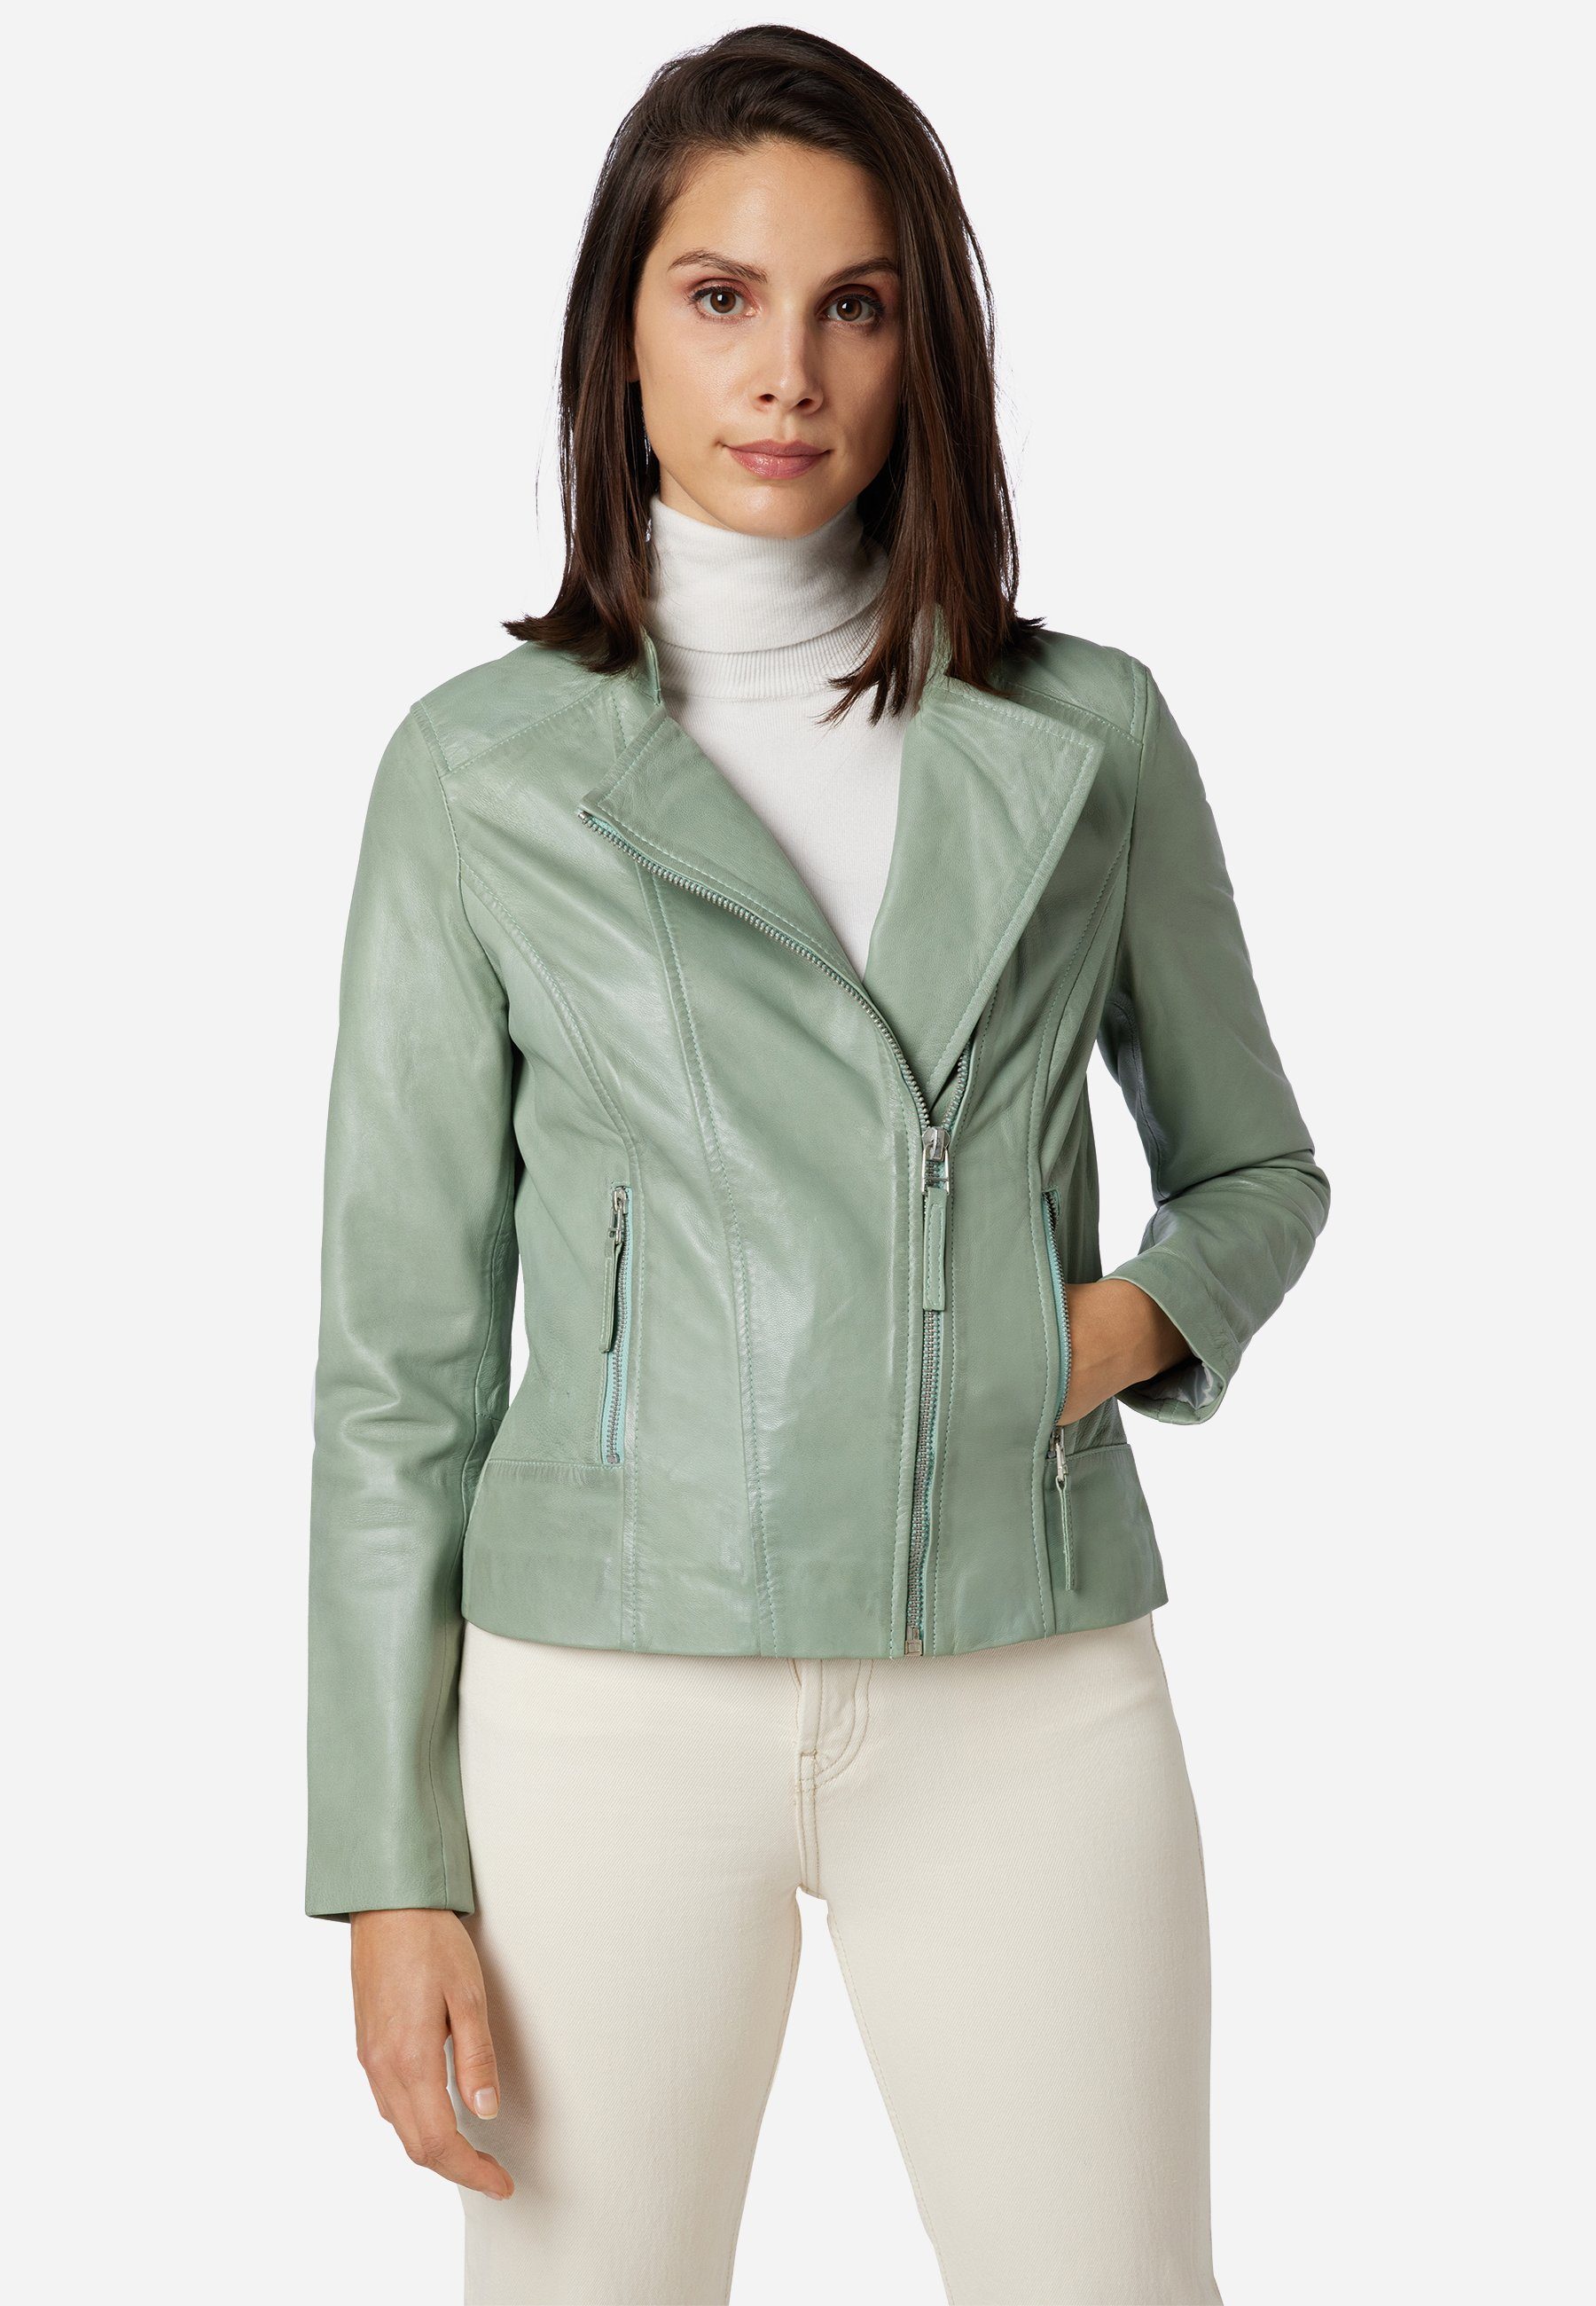 Damen Lederjacke in grün online kaufen | OTTO